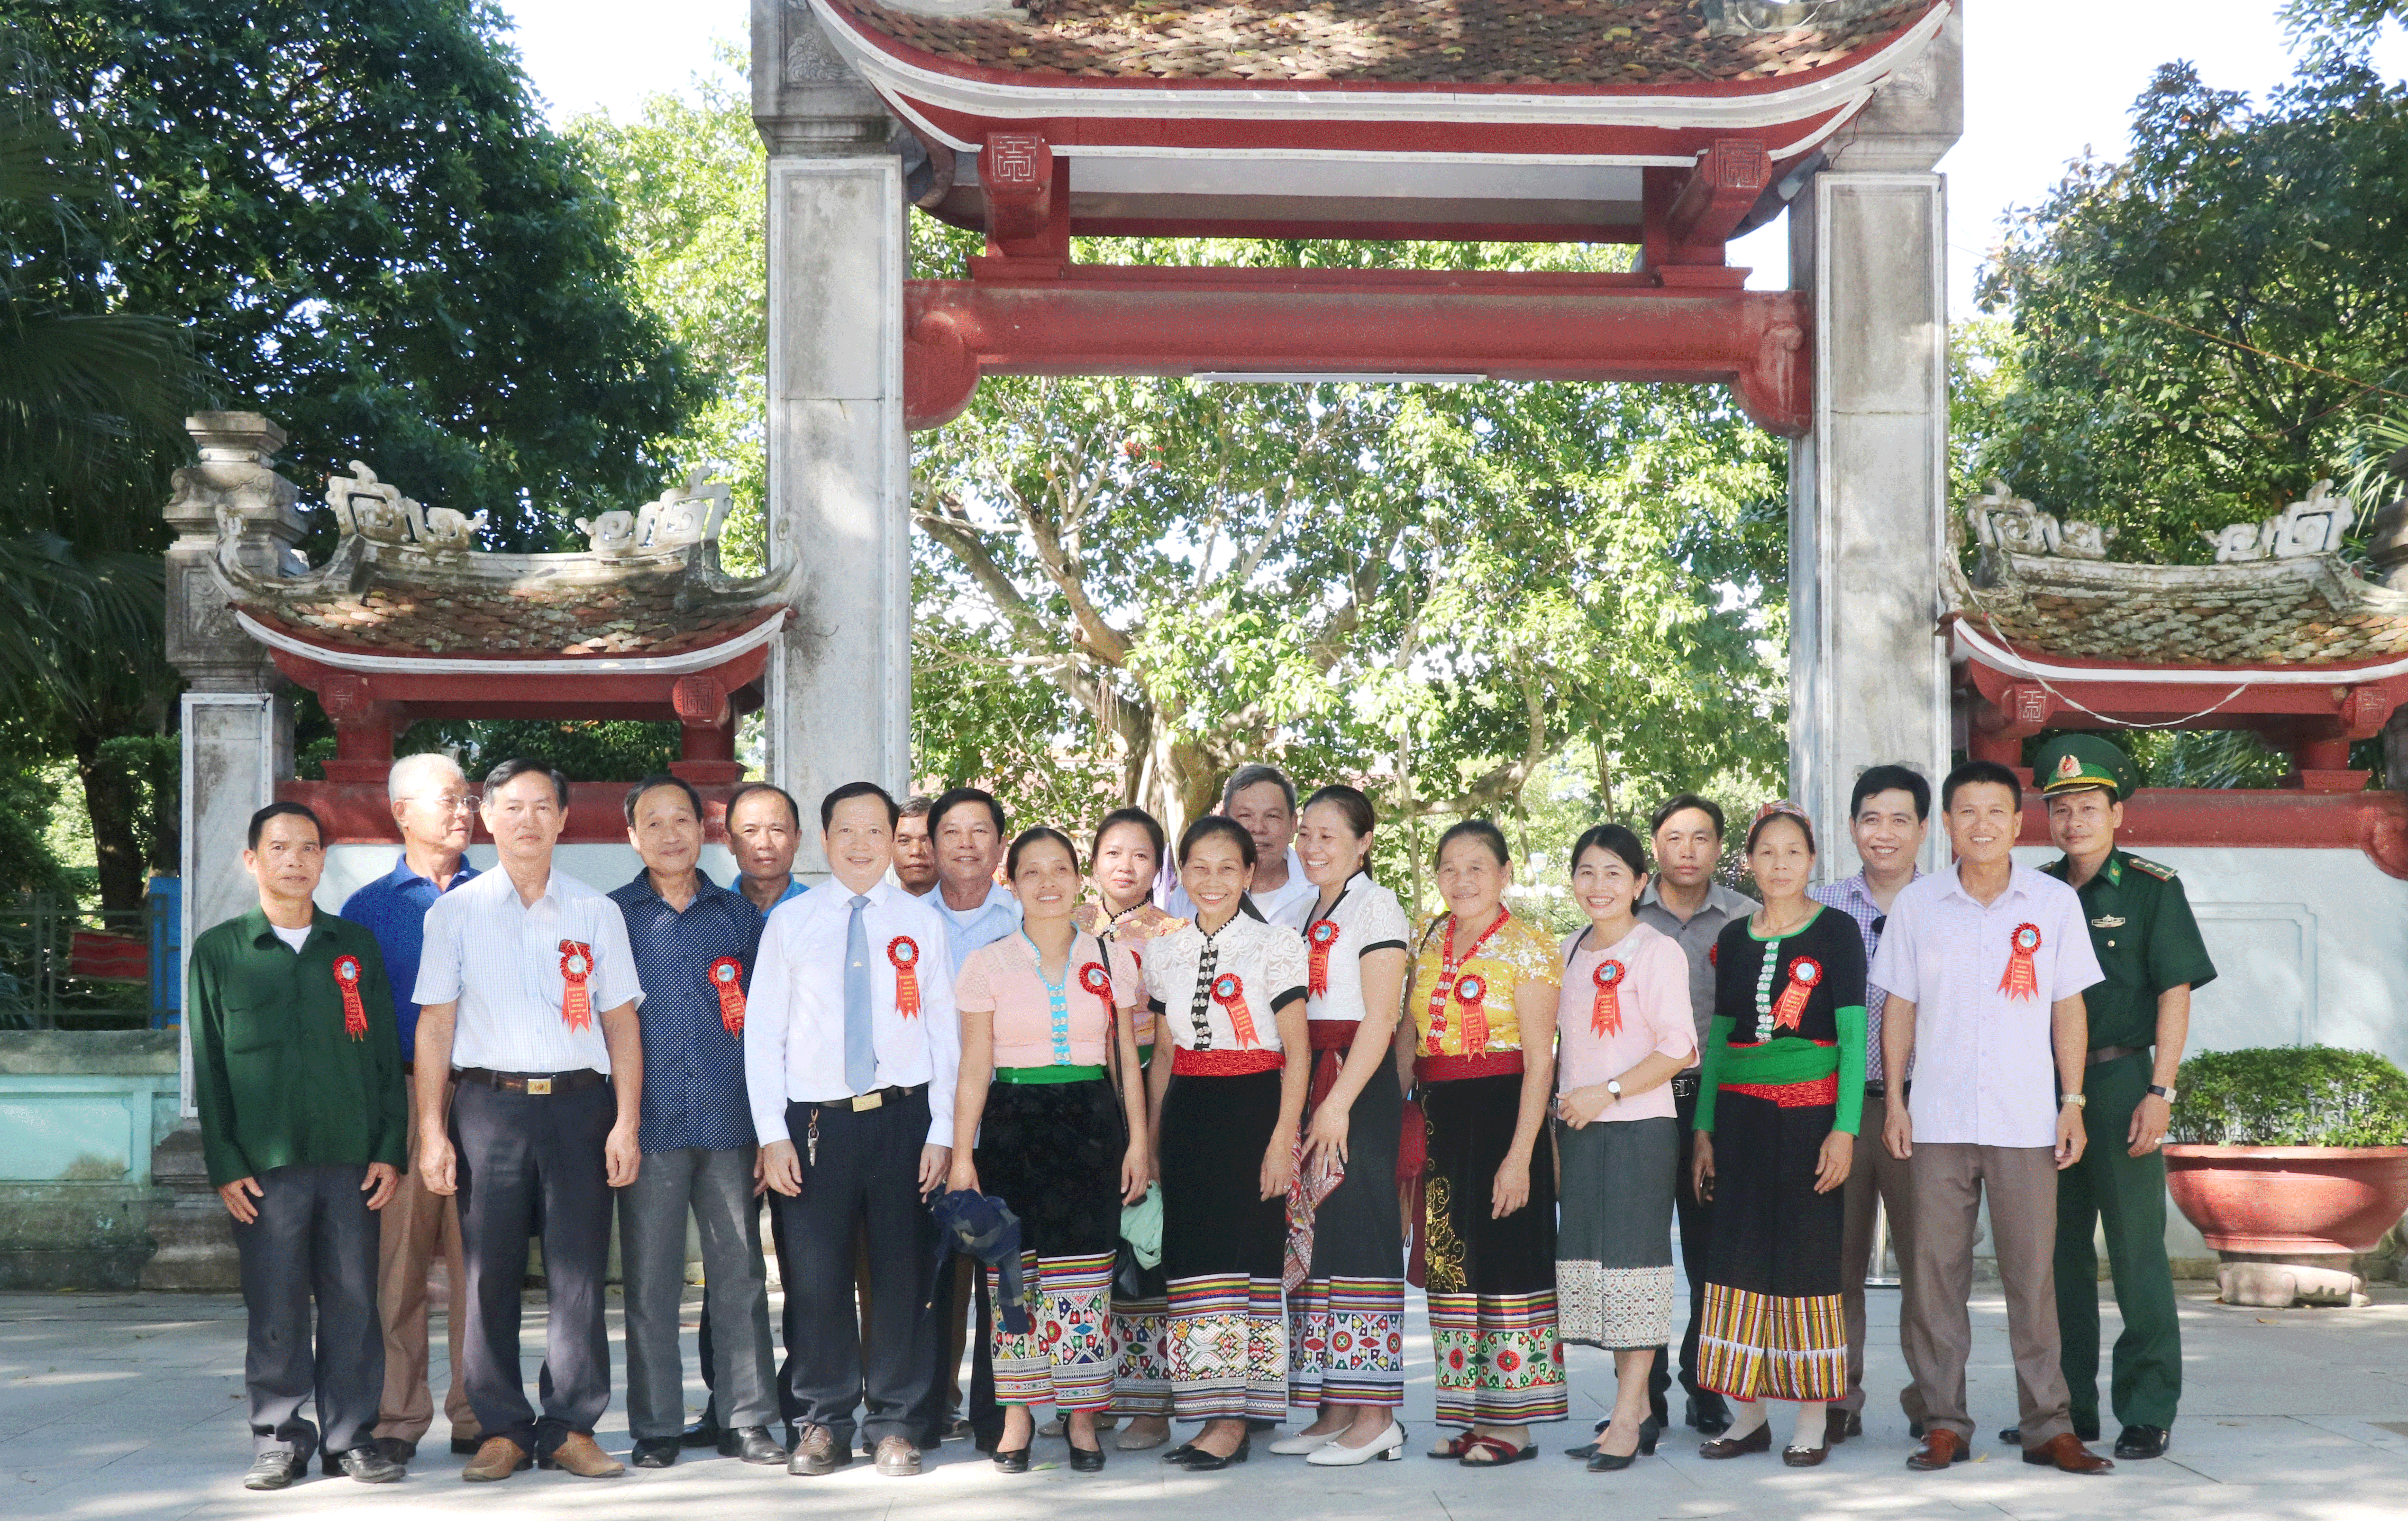 8. Đồng chí Lương Thanh Hải, Tỉnh ủy viên, Trưởng Ban Dân tộc tỉnh chụp ảnh lưu niệm với các đại biểu tiêu biểu người DTTS trong một dịp về thăm quê Bác.